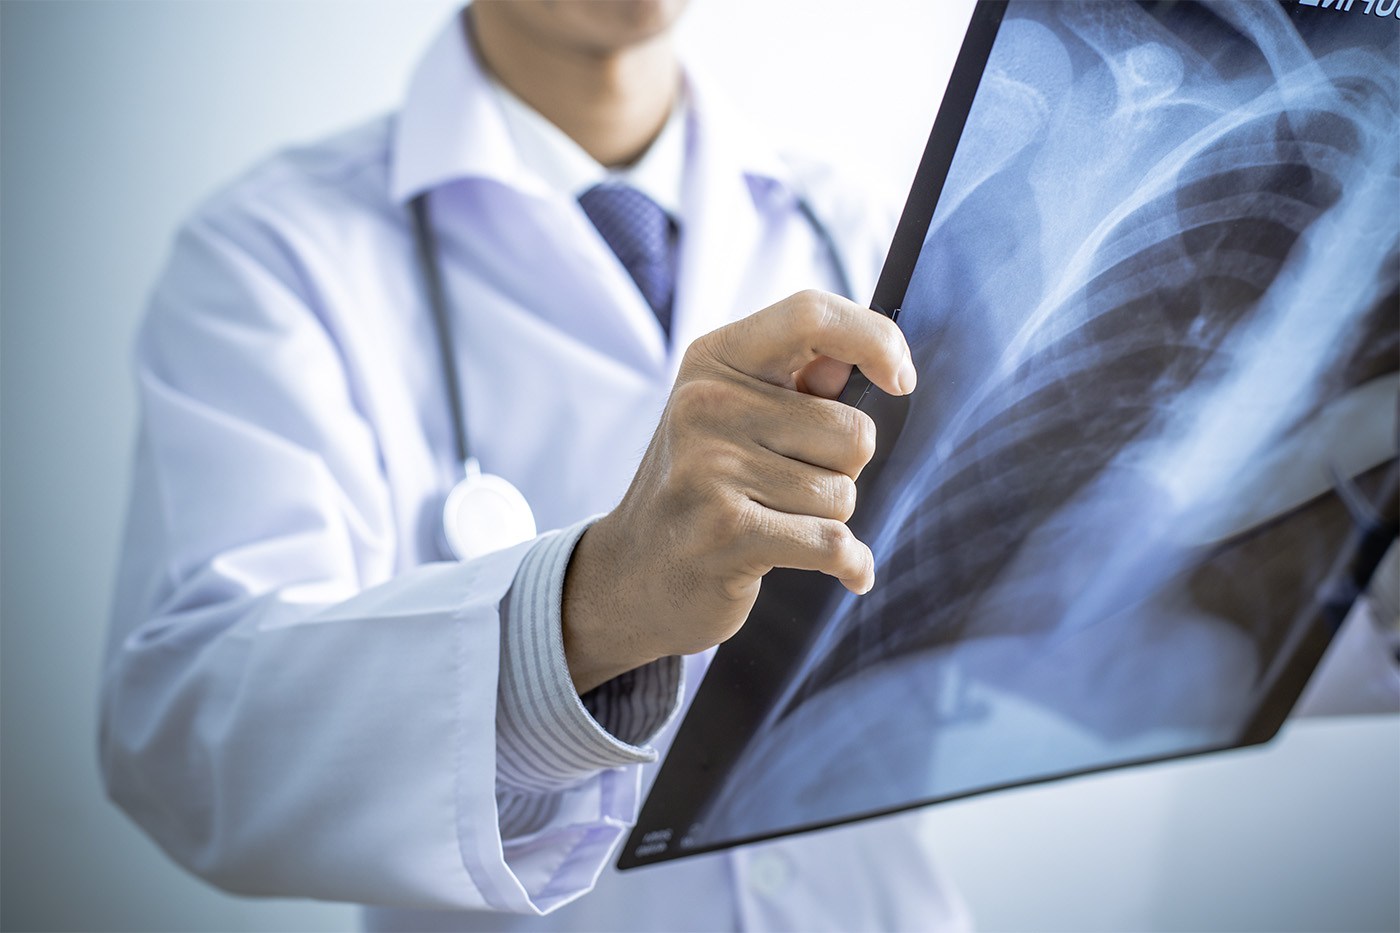   Khi bị viêm phổi, bệnh nhân có thể cảm thấy đau lưng khi thở  